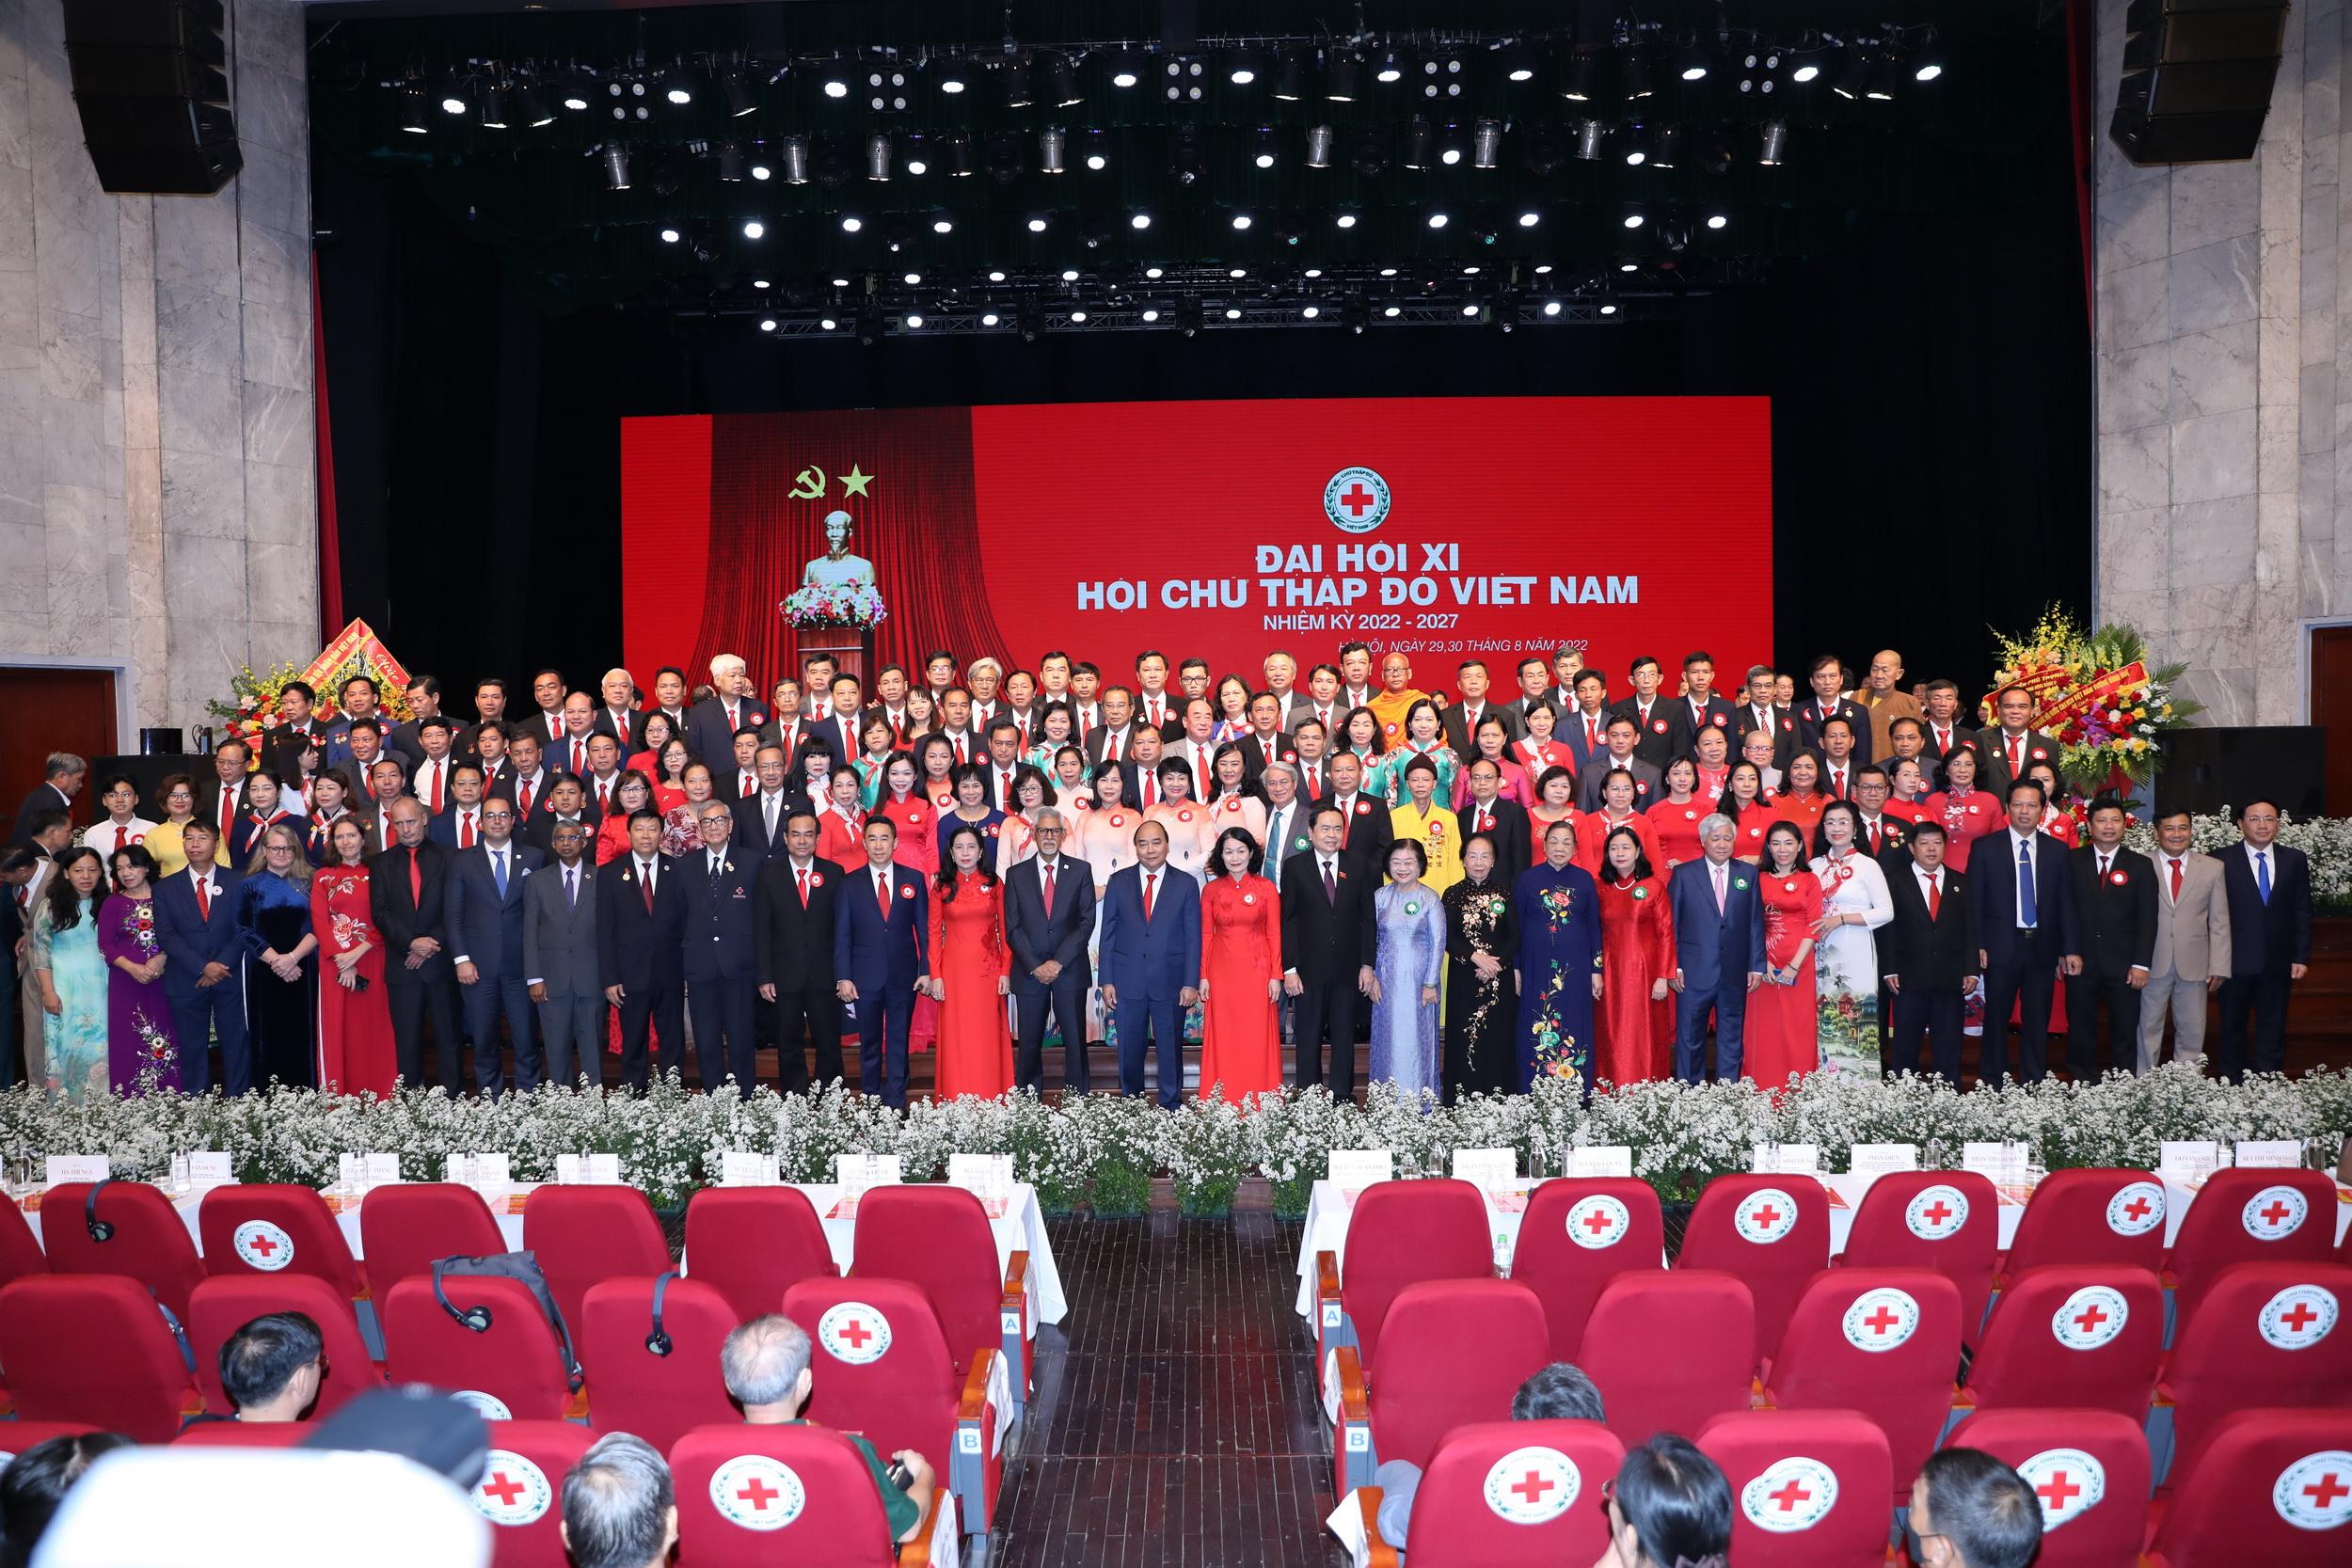 Đại hội đại biểu toàn quốc Hội Chữ thập đỏ Việt Nam lần thứ XI thành công tốt đẹp